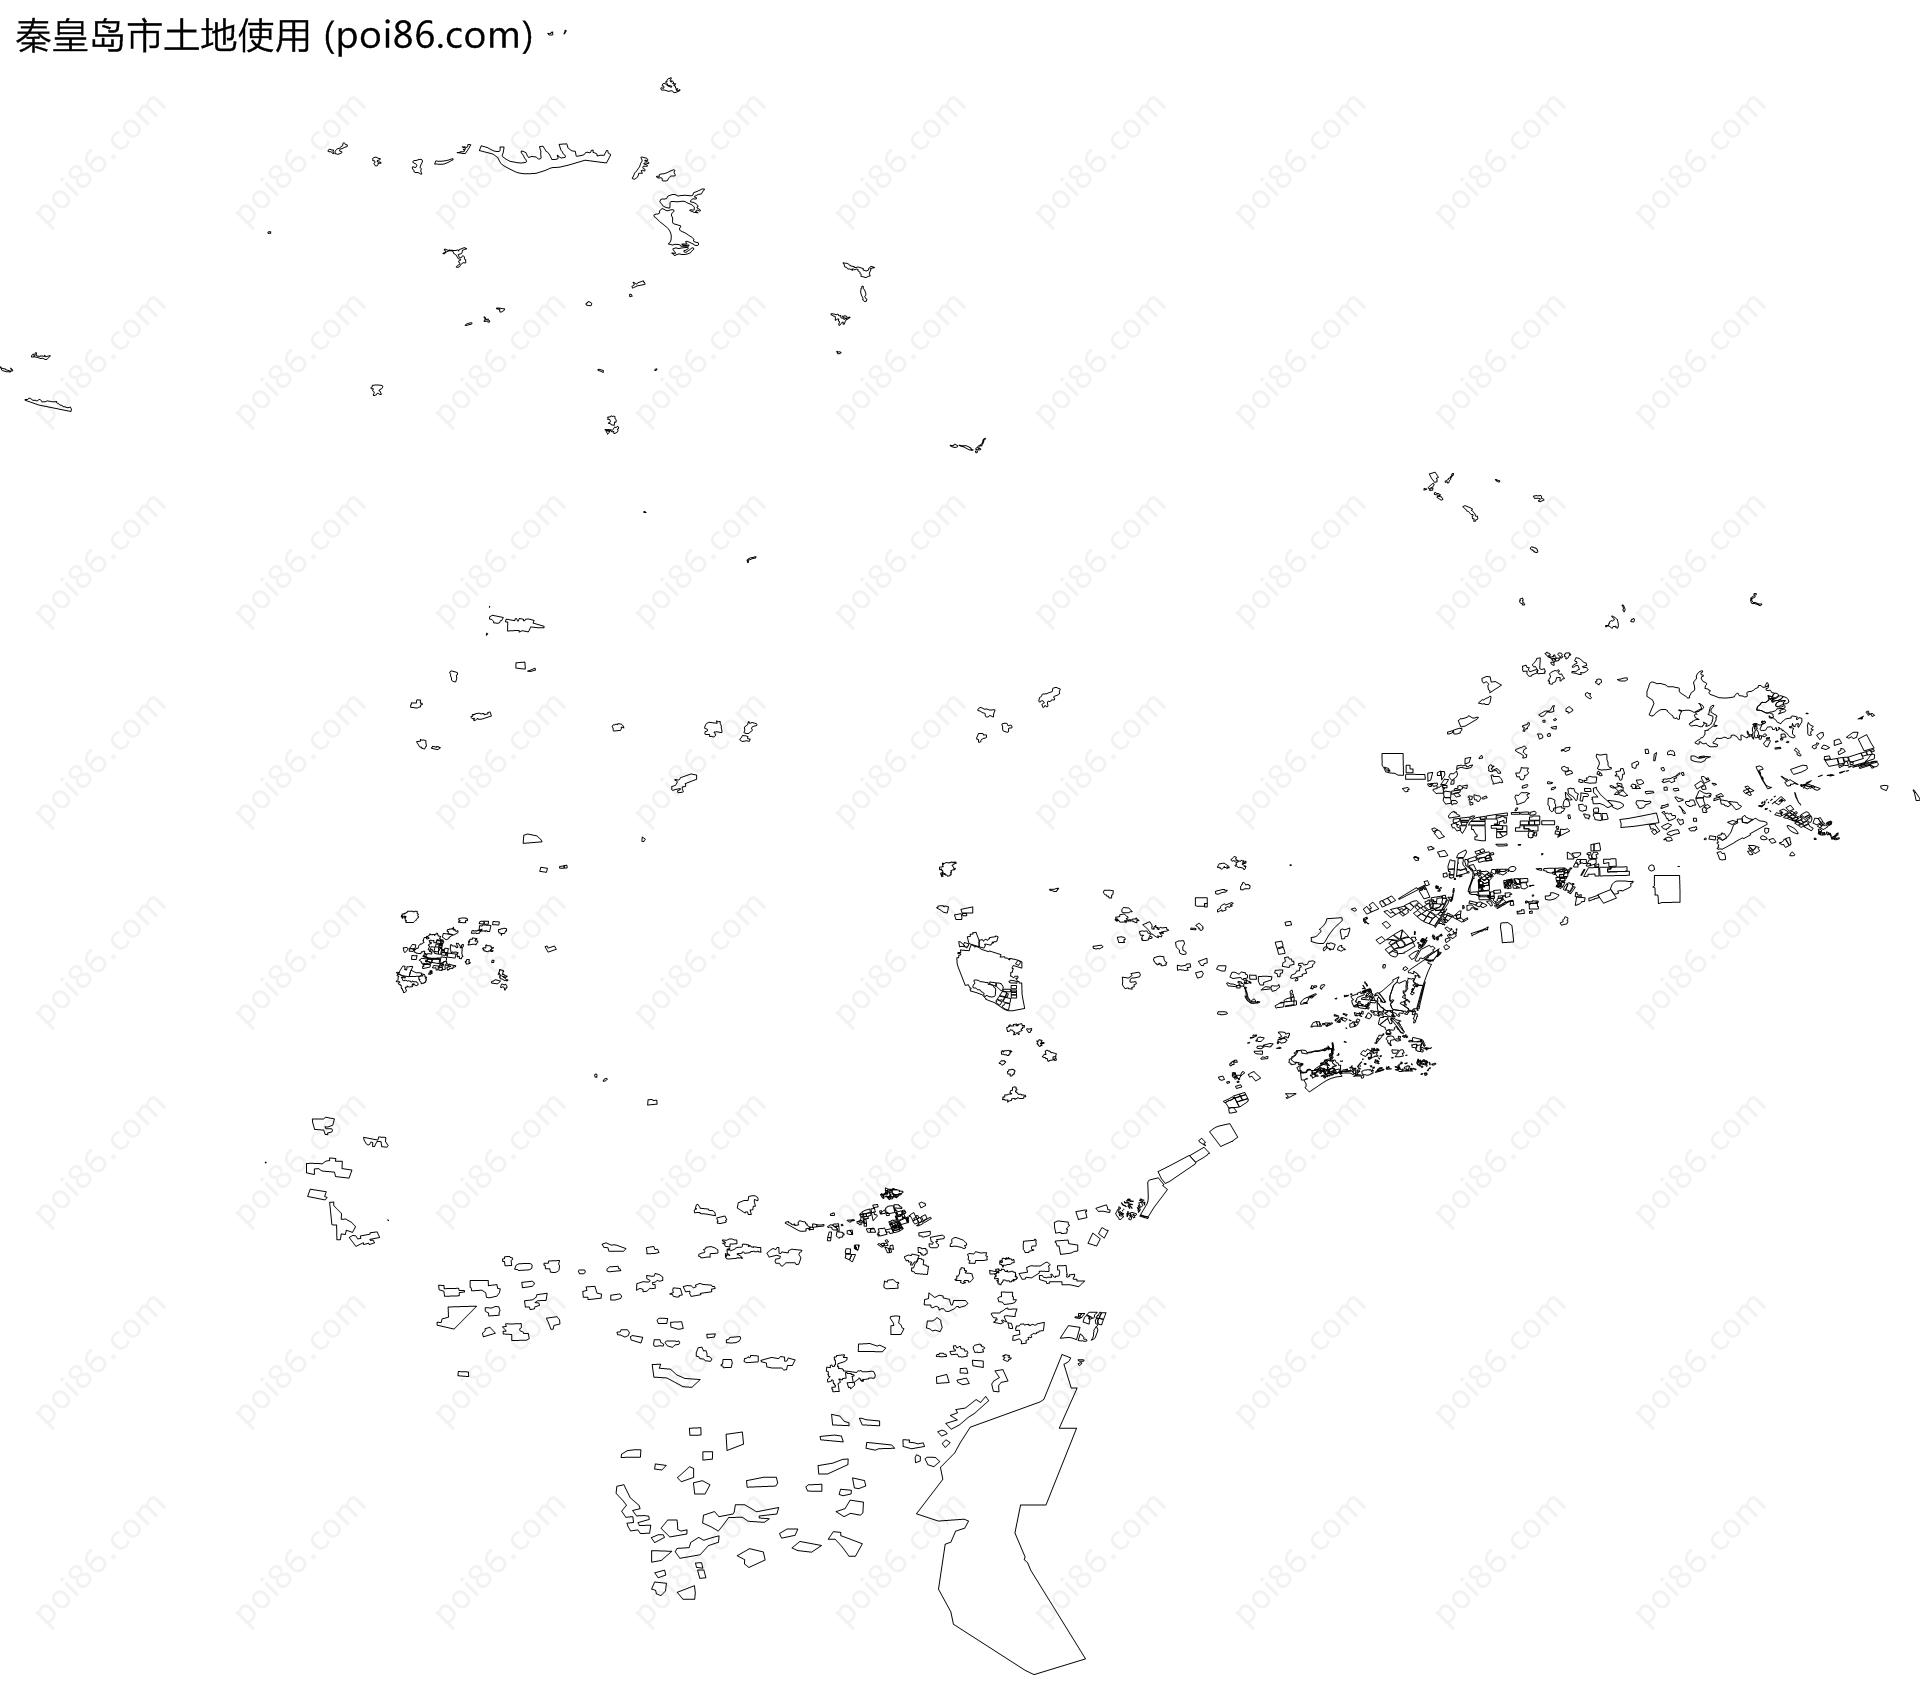 秦皇岛市土地使用地图